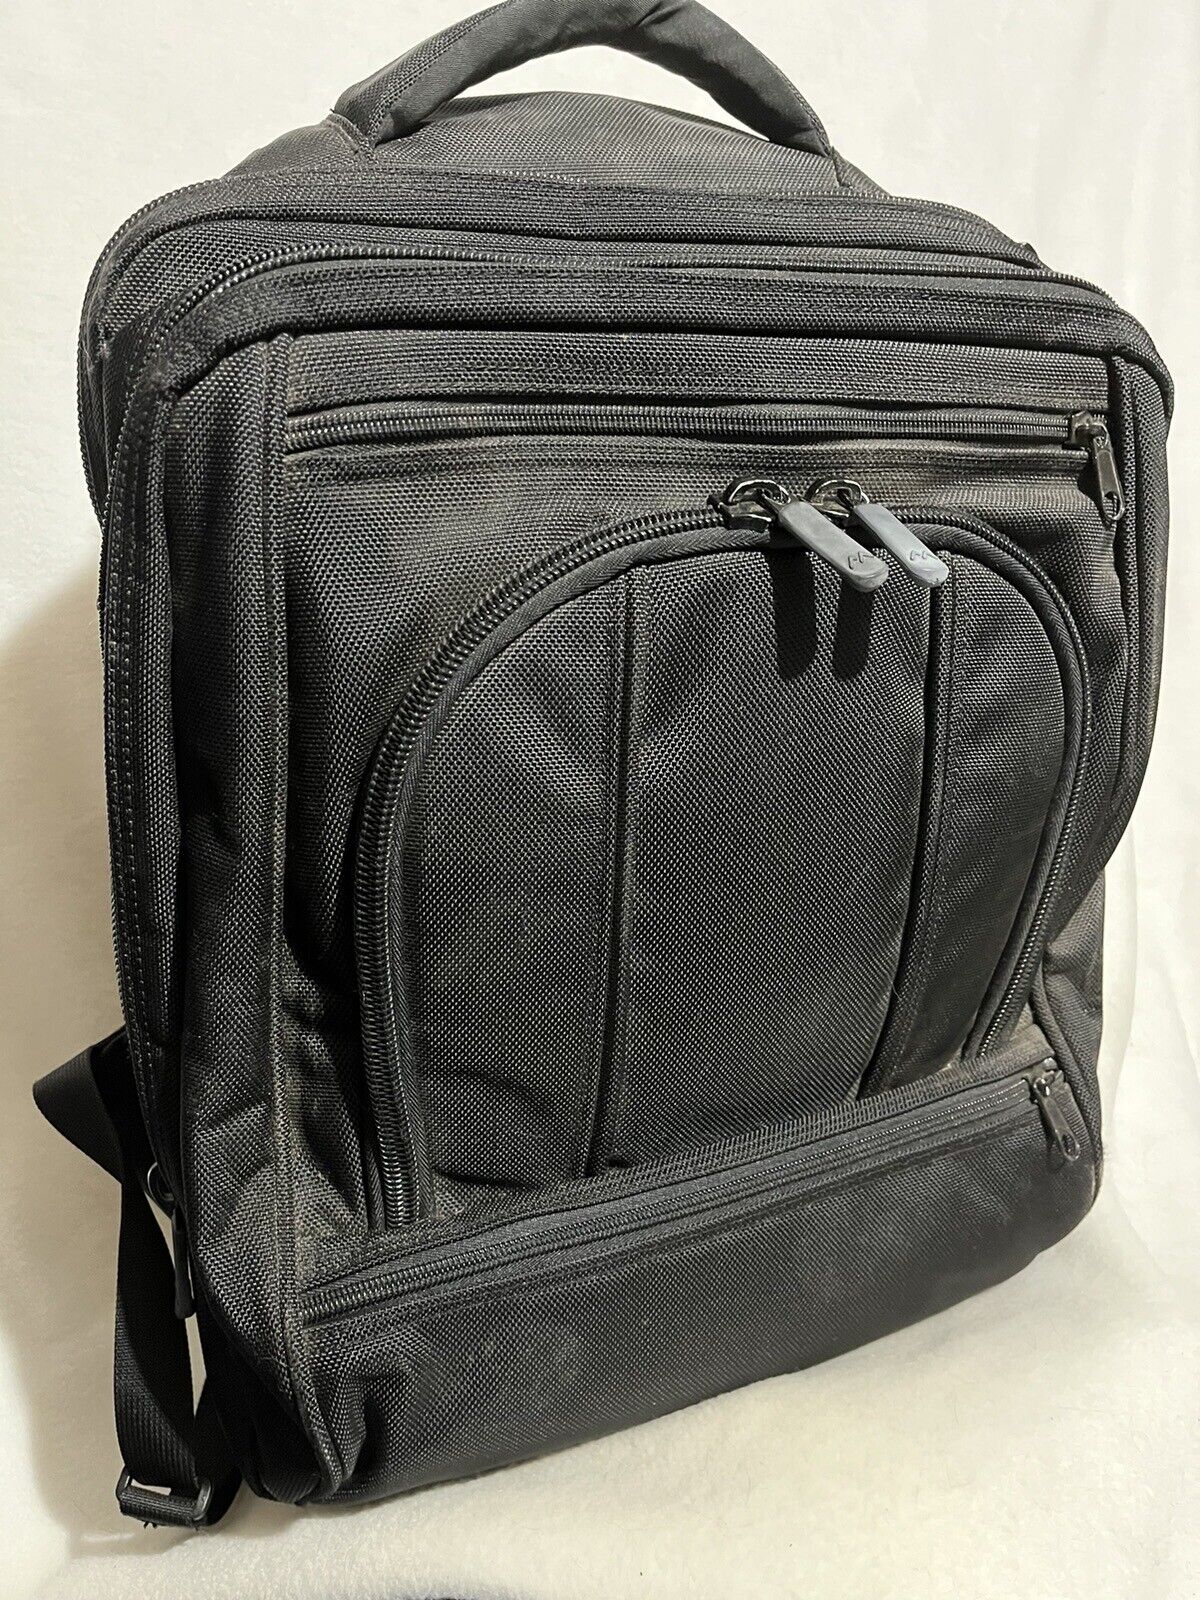 Brenthaven Collins Limited Edition 15.5” Laptop Case/Bag Backpack